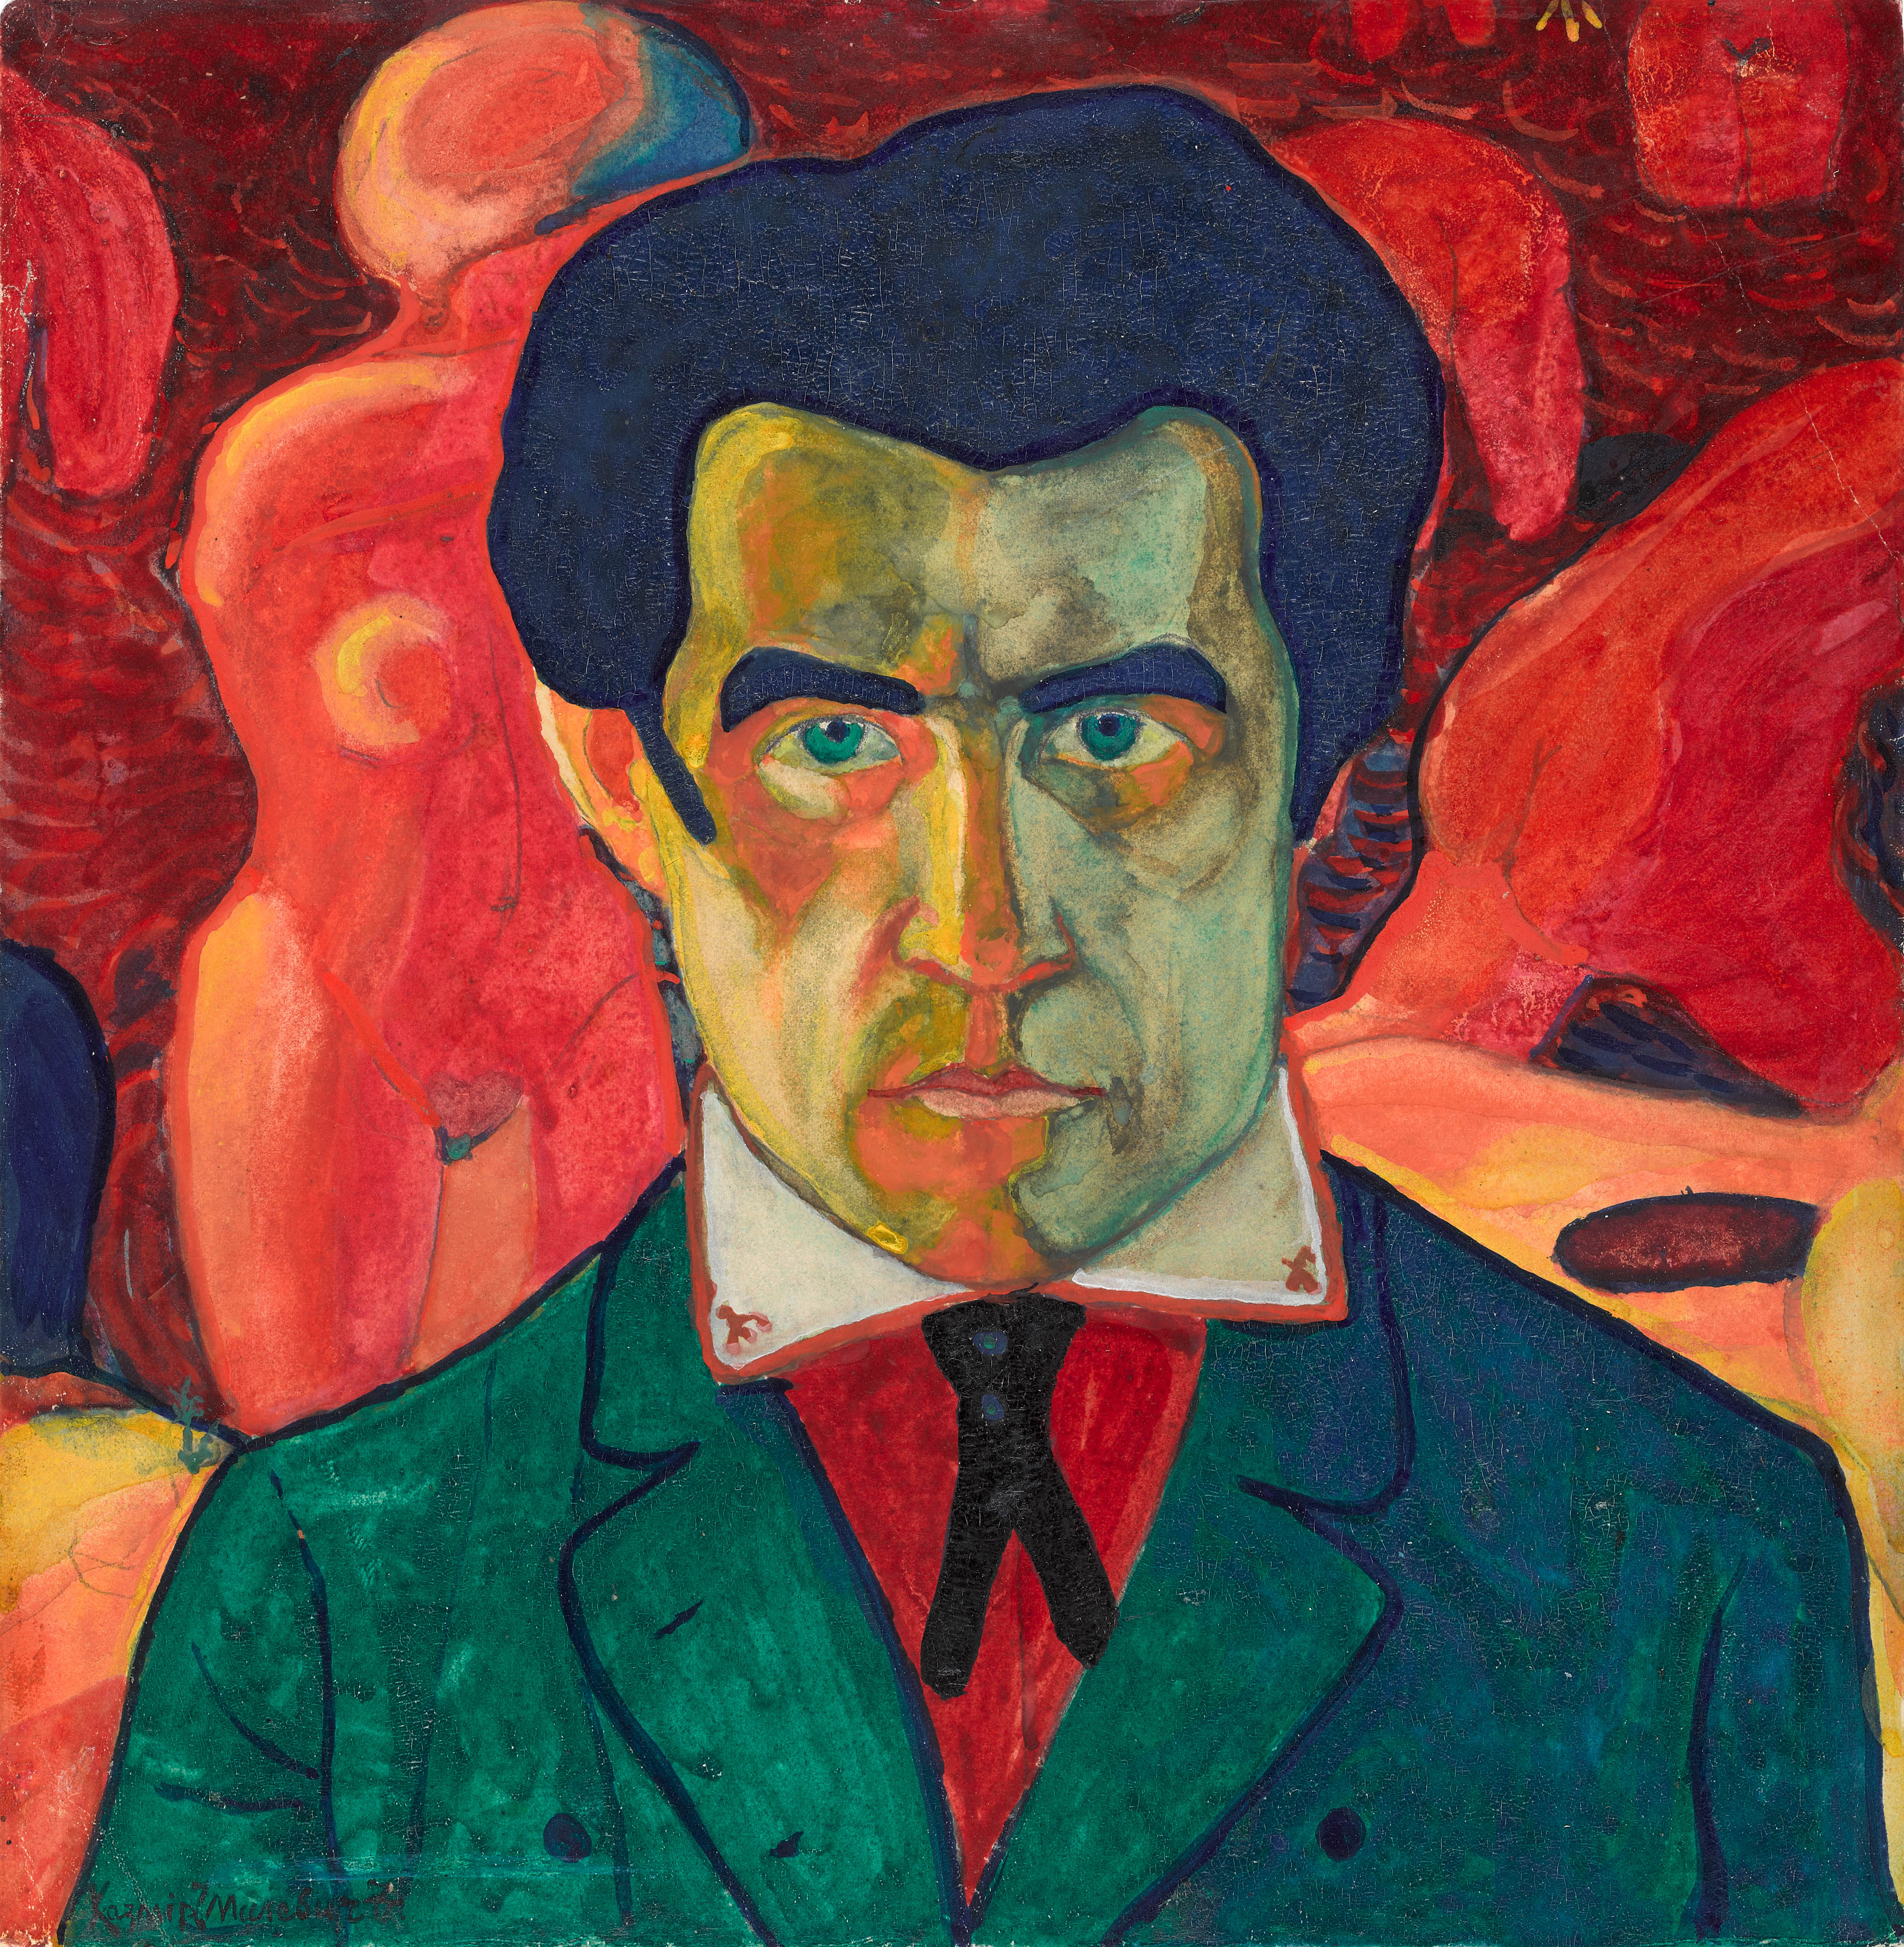 Kazimir Malevich - February 23, 1878 - May 15, 1935